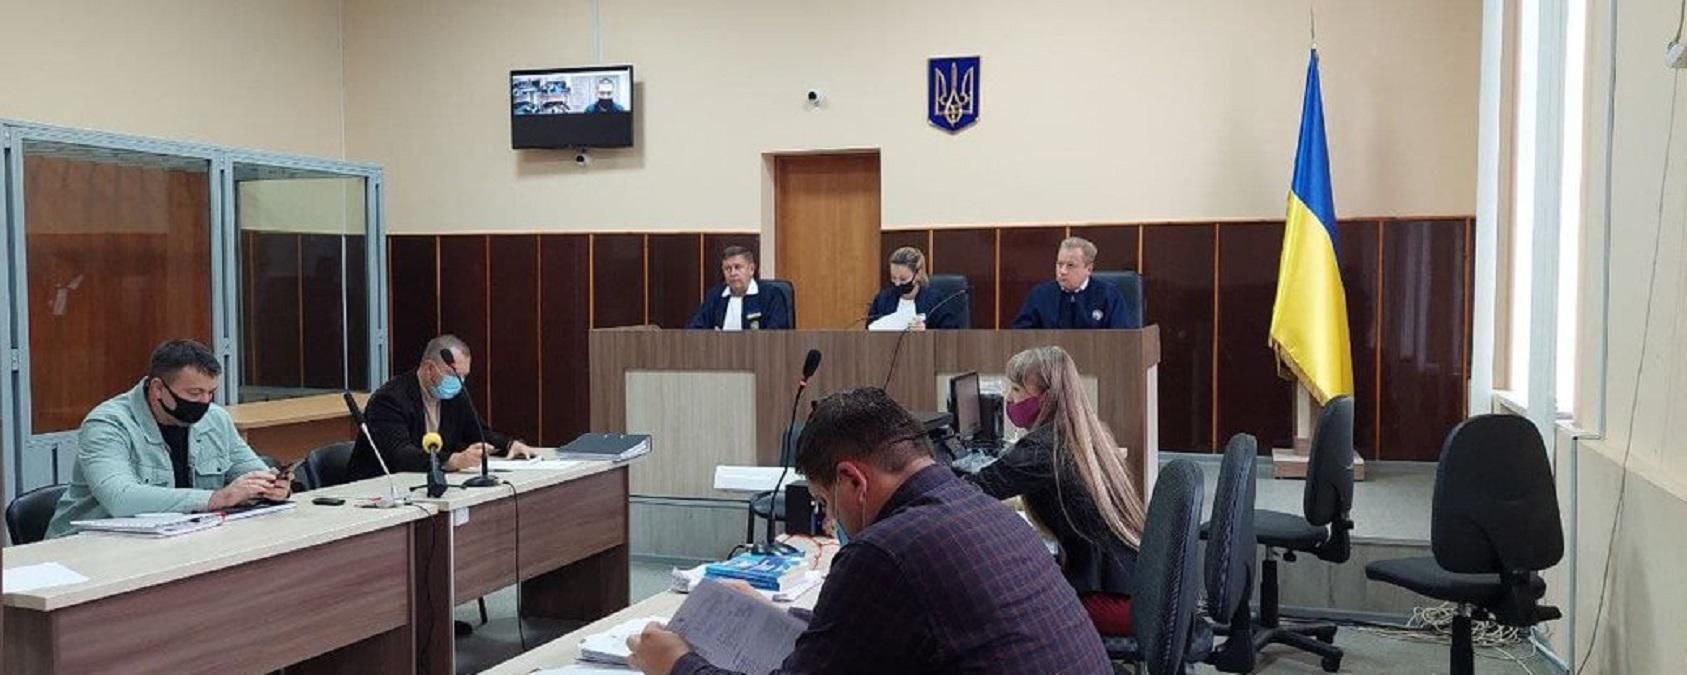 Приговор обвиняемому в ДТП с двумя погибшими в Харькове Габышеву вступил в силу